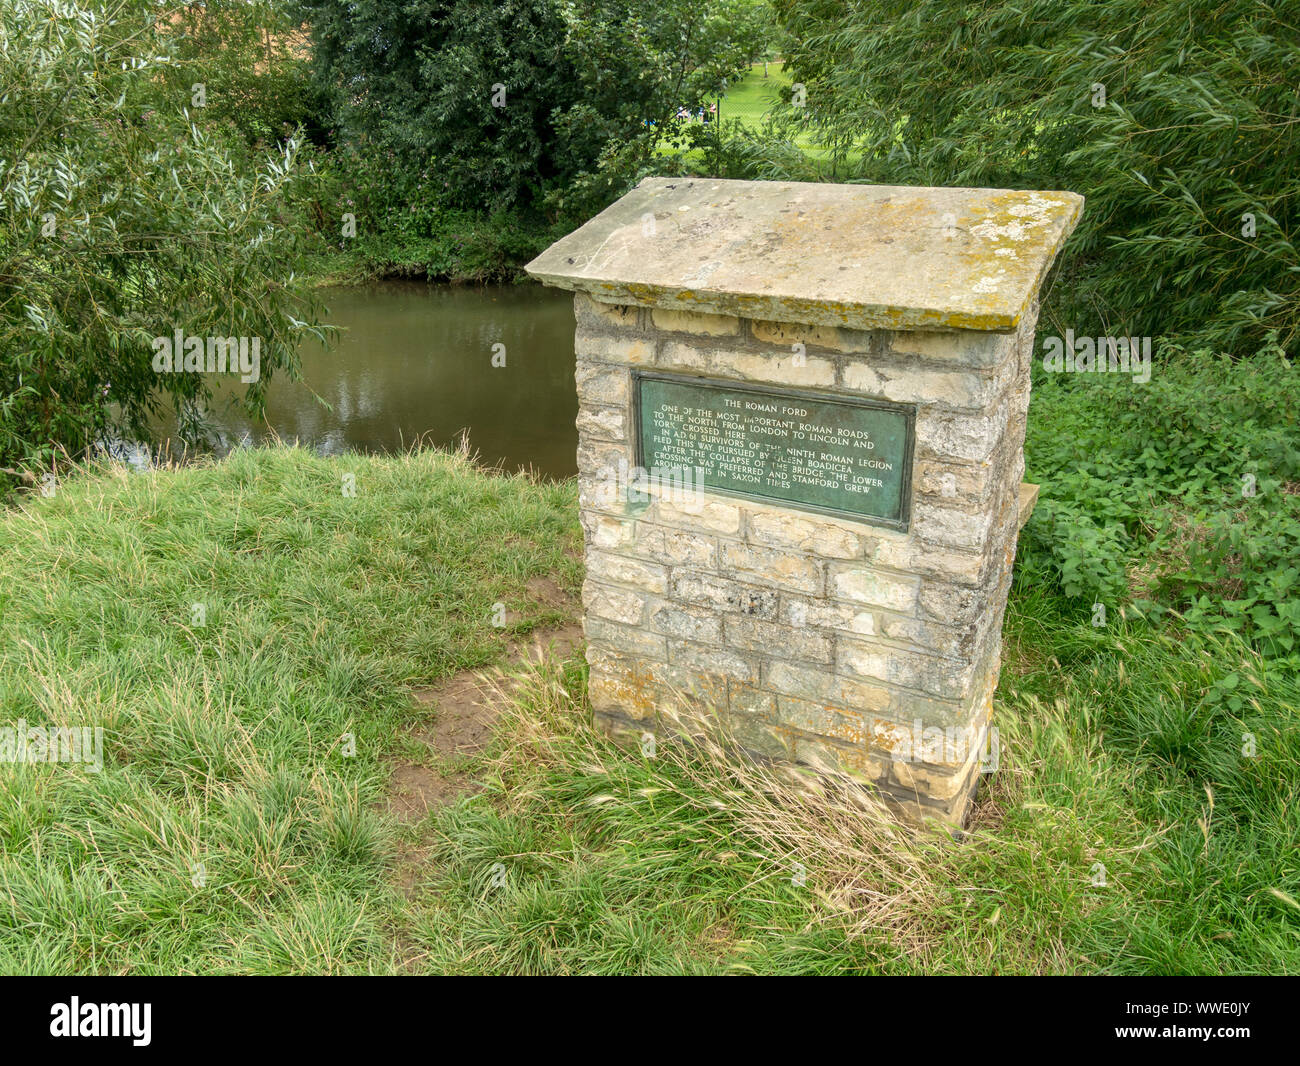 Socle en pierre avec plaque marquant l'emplacement de l'ancienne grande route du Nord ford / traversée de la rivière Welland, Stamford, Lincolnshire, Angleterre, RU Banque D'Images